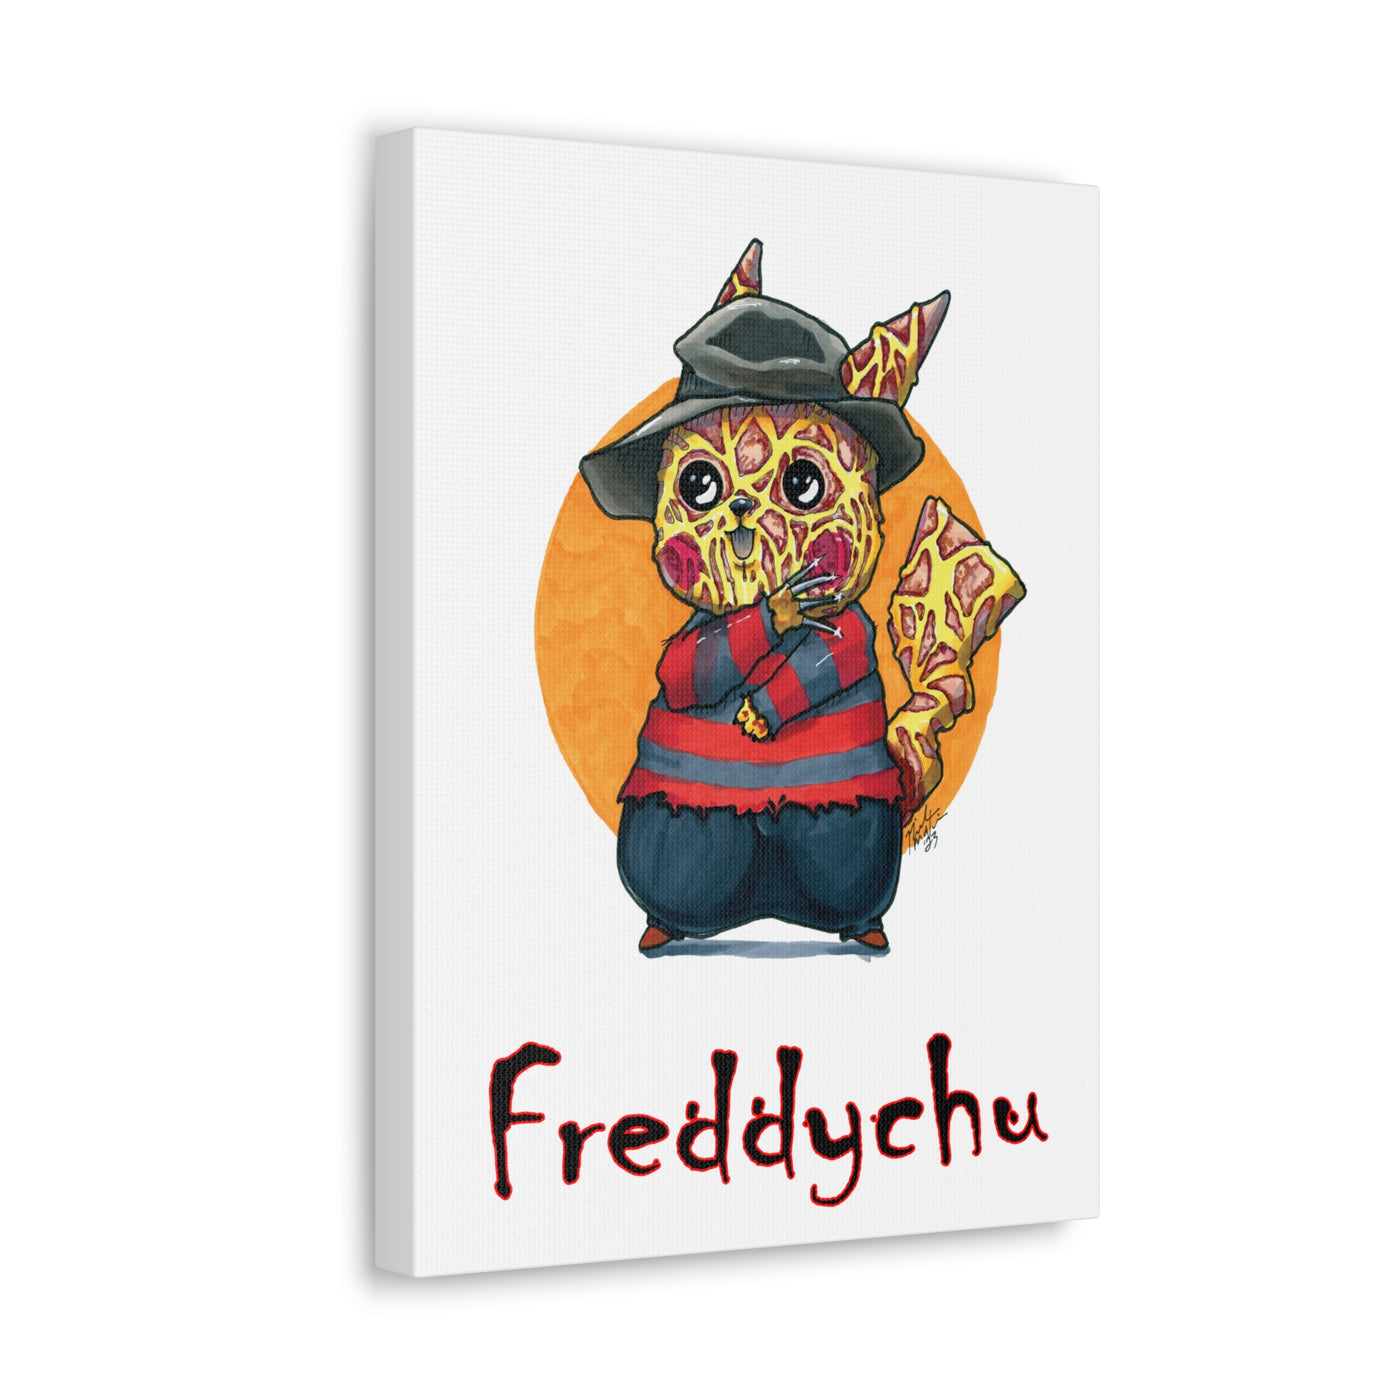 Freddychu - Horrorchu Mashup Canvas Print  w/Text